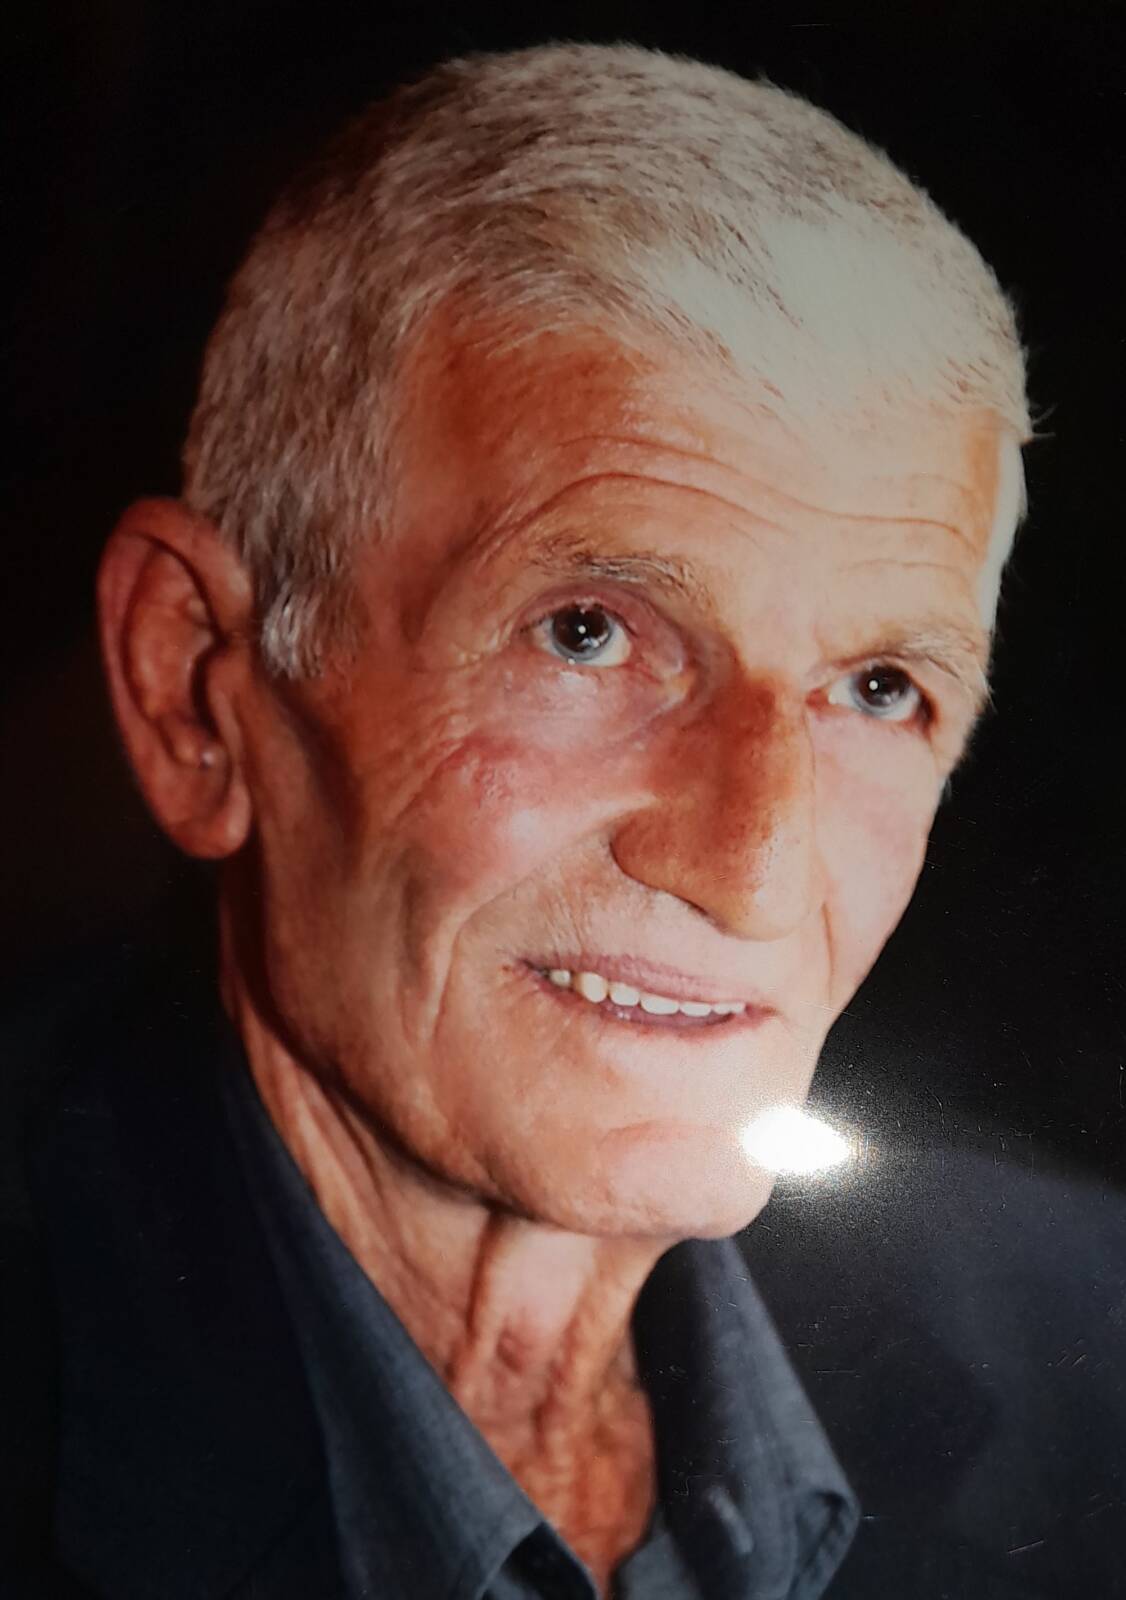 Έφυγε από την ζωή ο Περικλής Σιδηρόπουλος σε ηλικία 82 ετών – Η κηδεία θα τελεστεί την Τρίτη 21 Νοεμβρίου